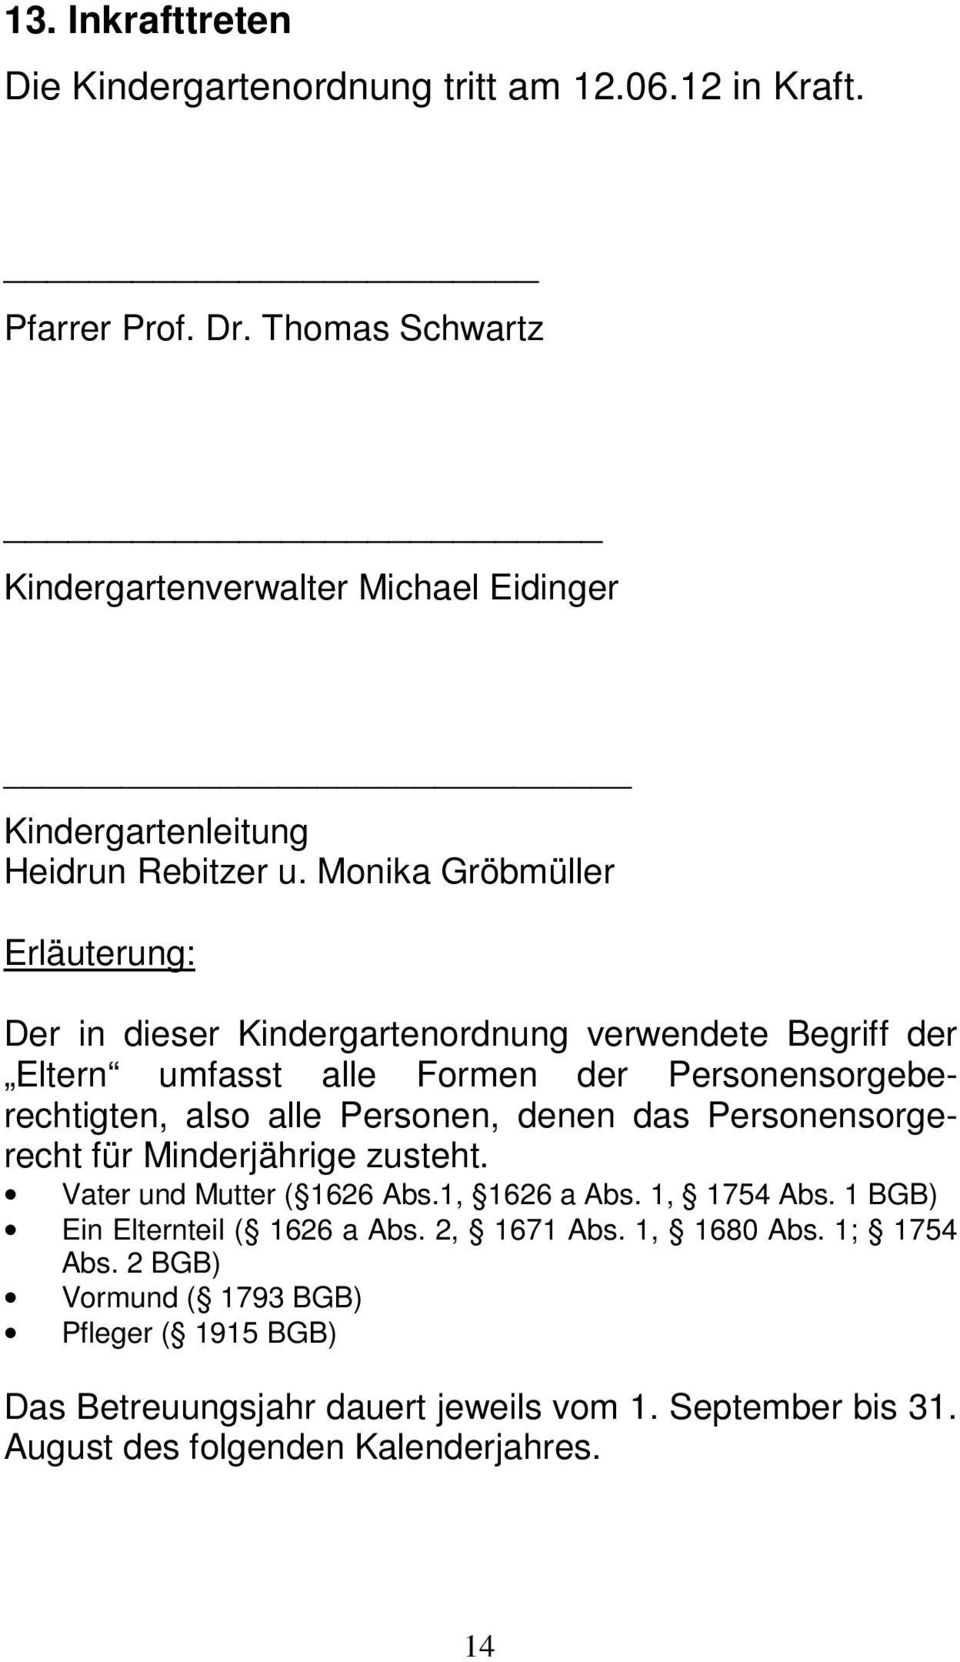 Monika Gröbmüller Erläuterung: Der in dieser Kindergartenordnung verwendete Begriff der Eltern umfasst alle Formen der Personensorgeberechtigten, also alle Personen,